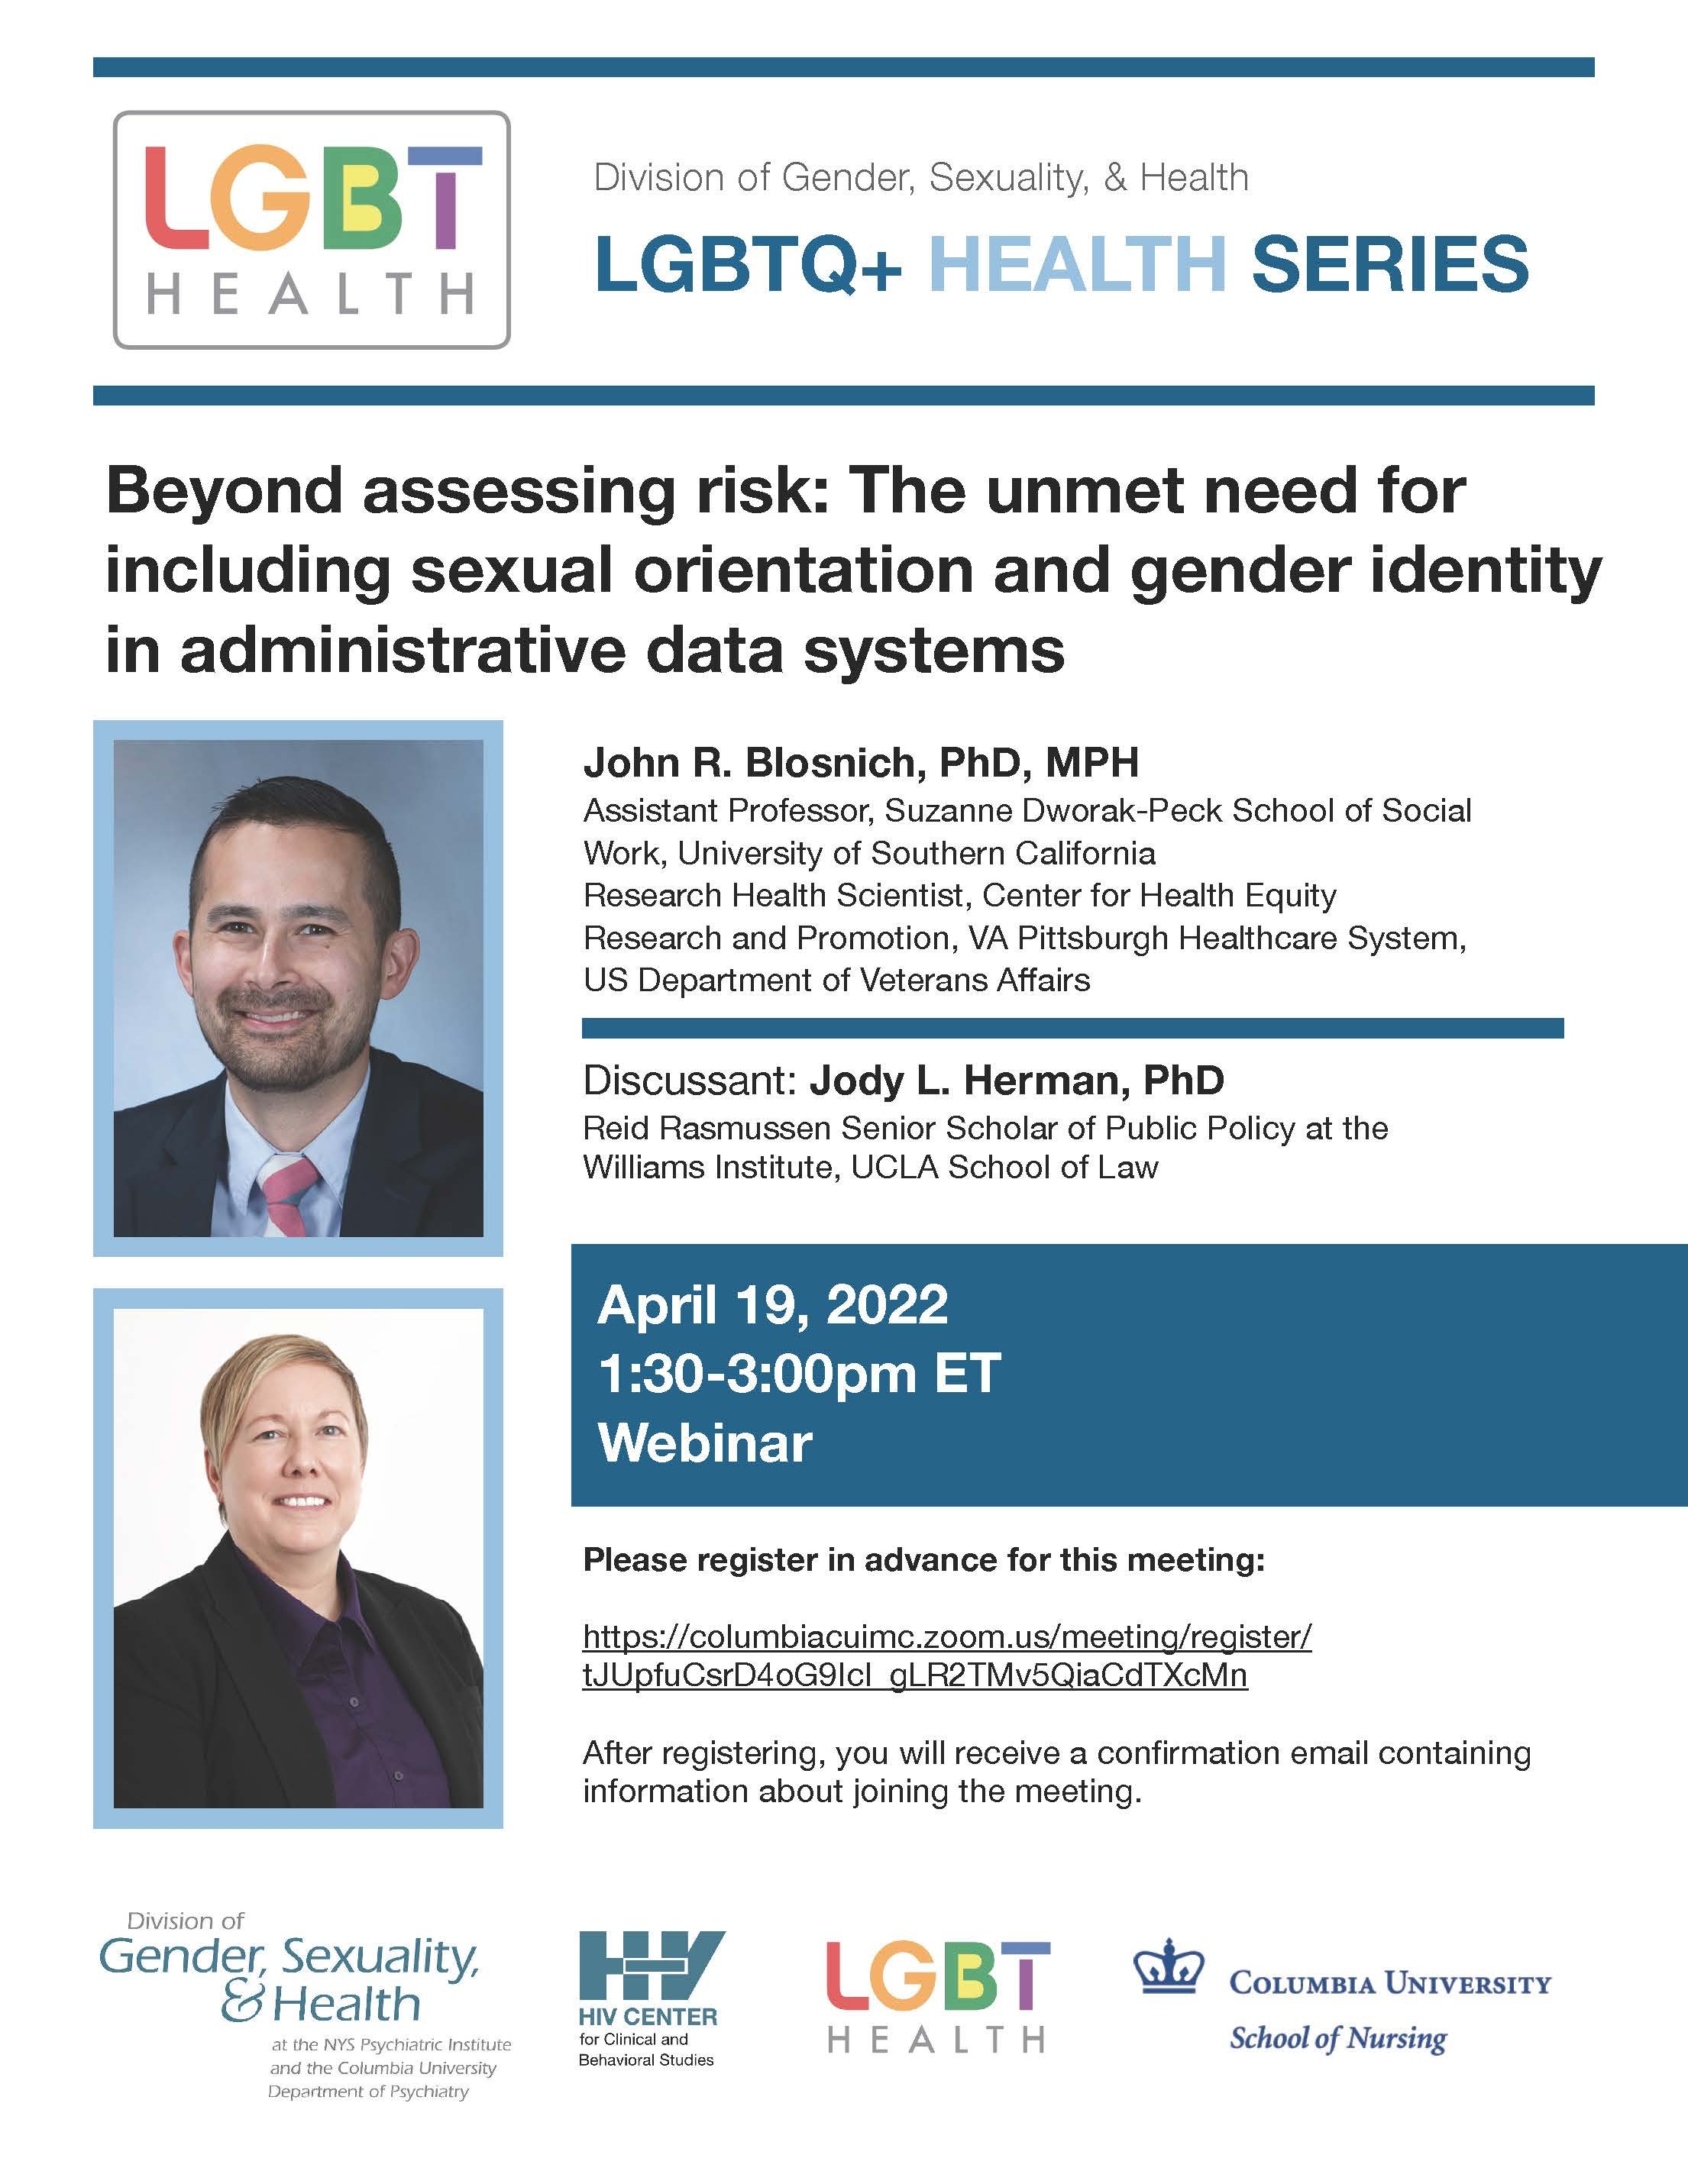 Apr 19 2022 LGBTQ+ Health.jpg